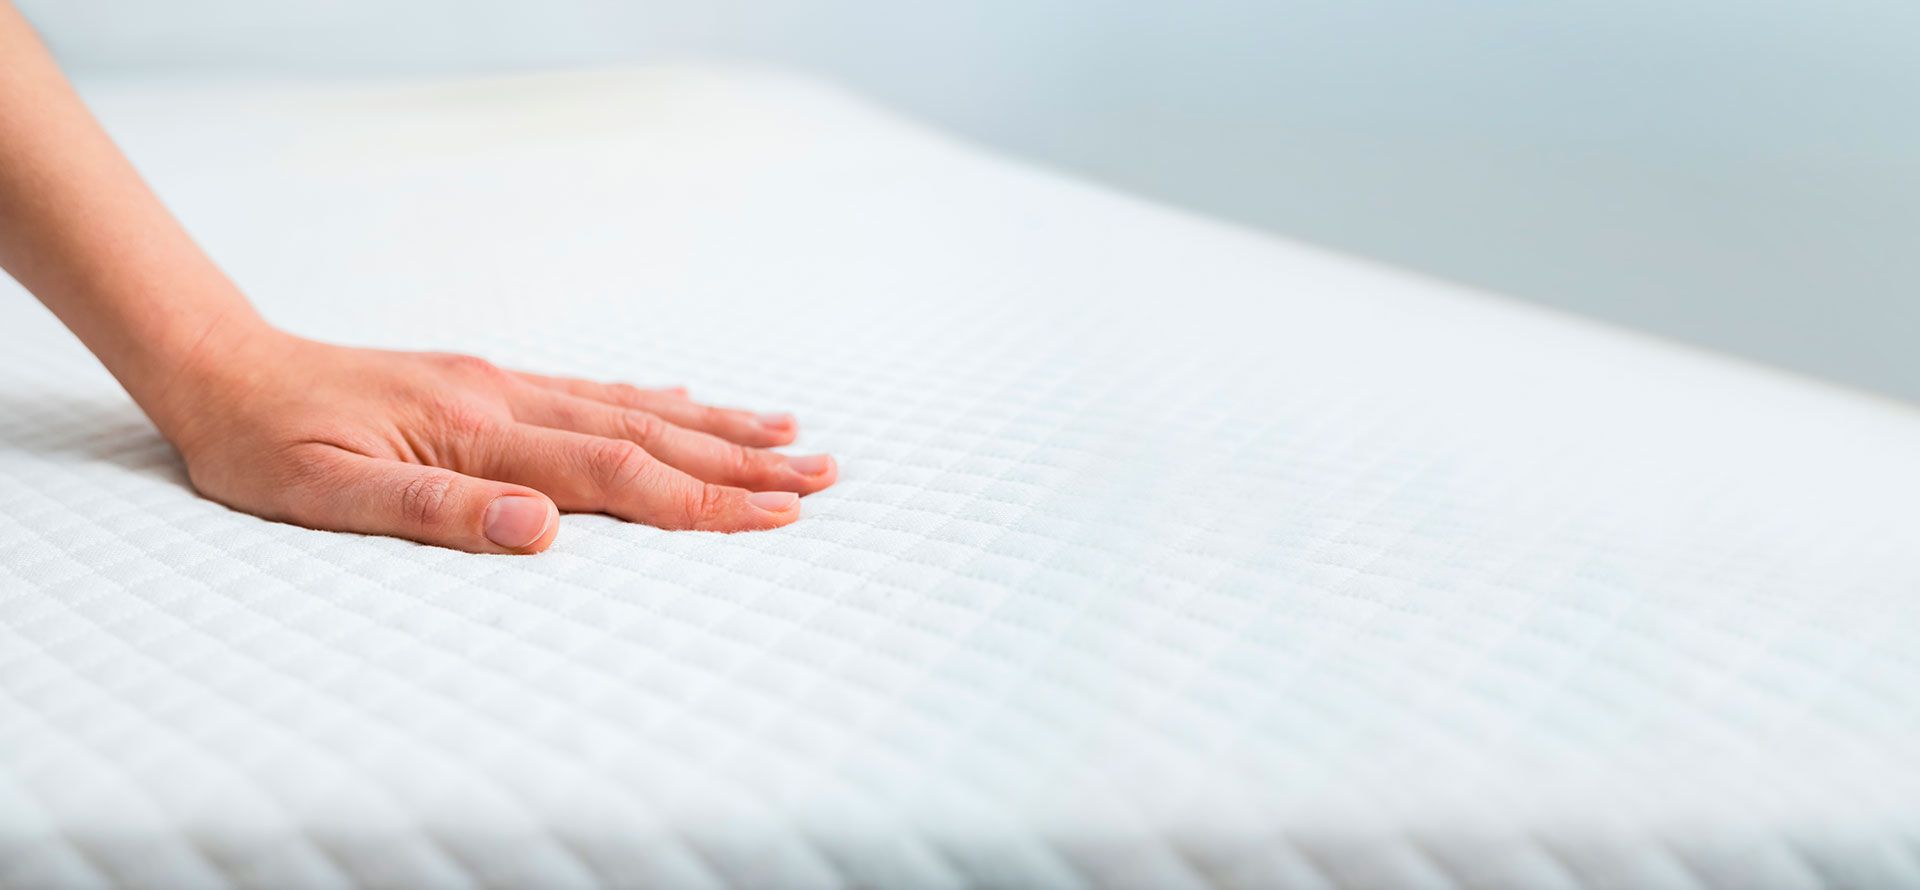 Hand on a firm mattress.